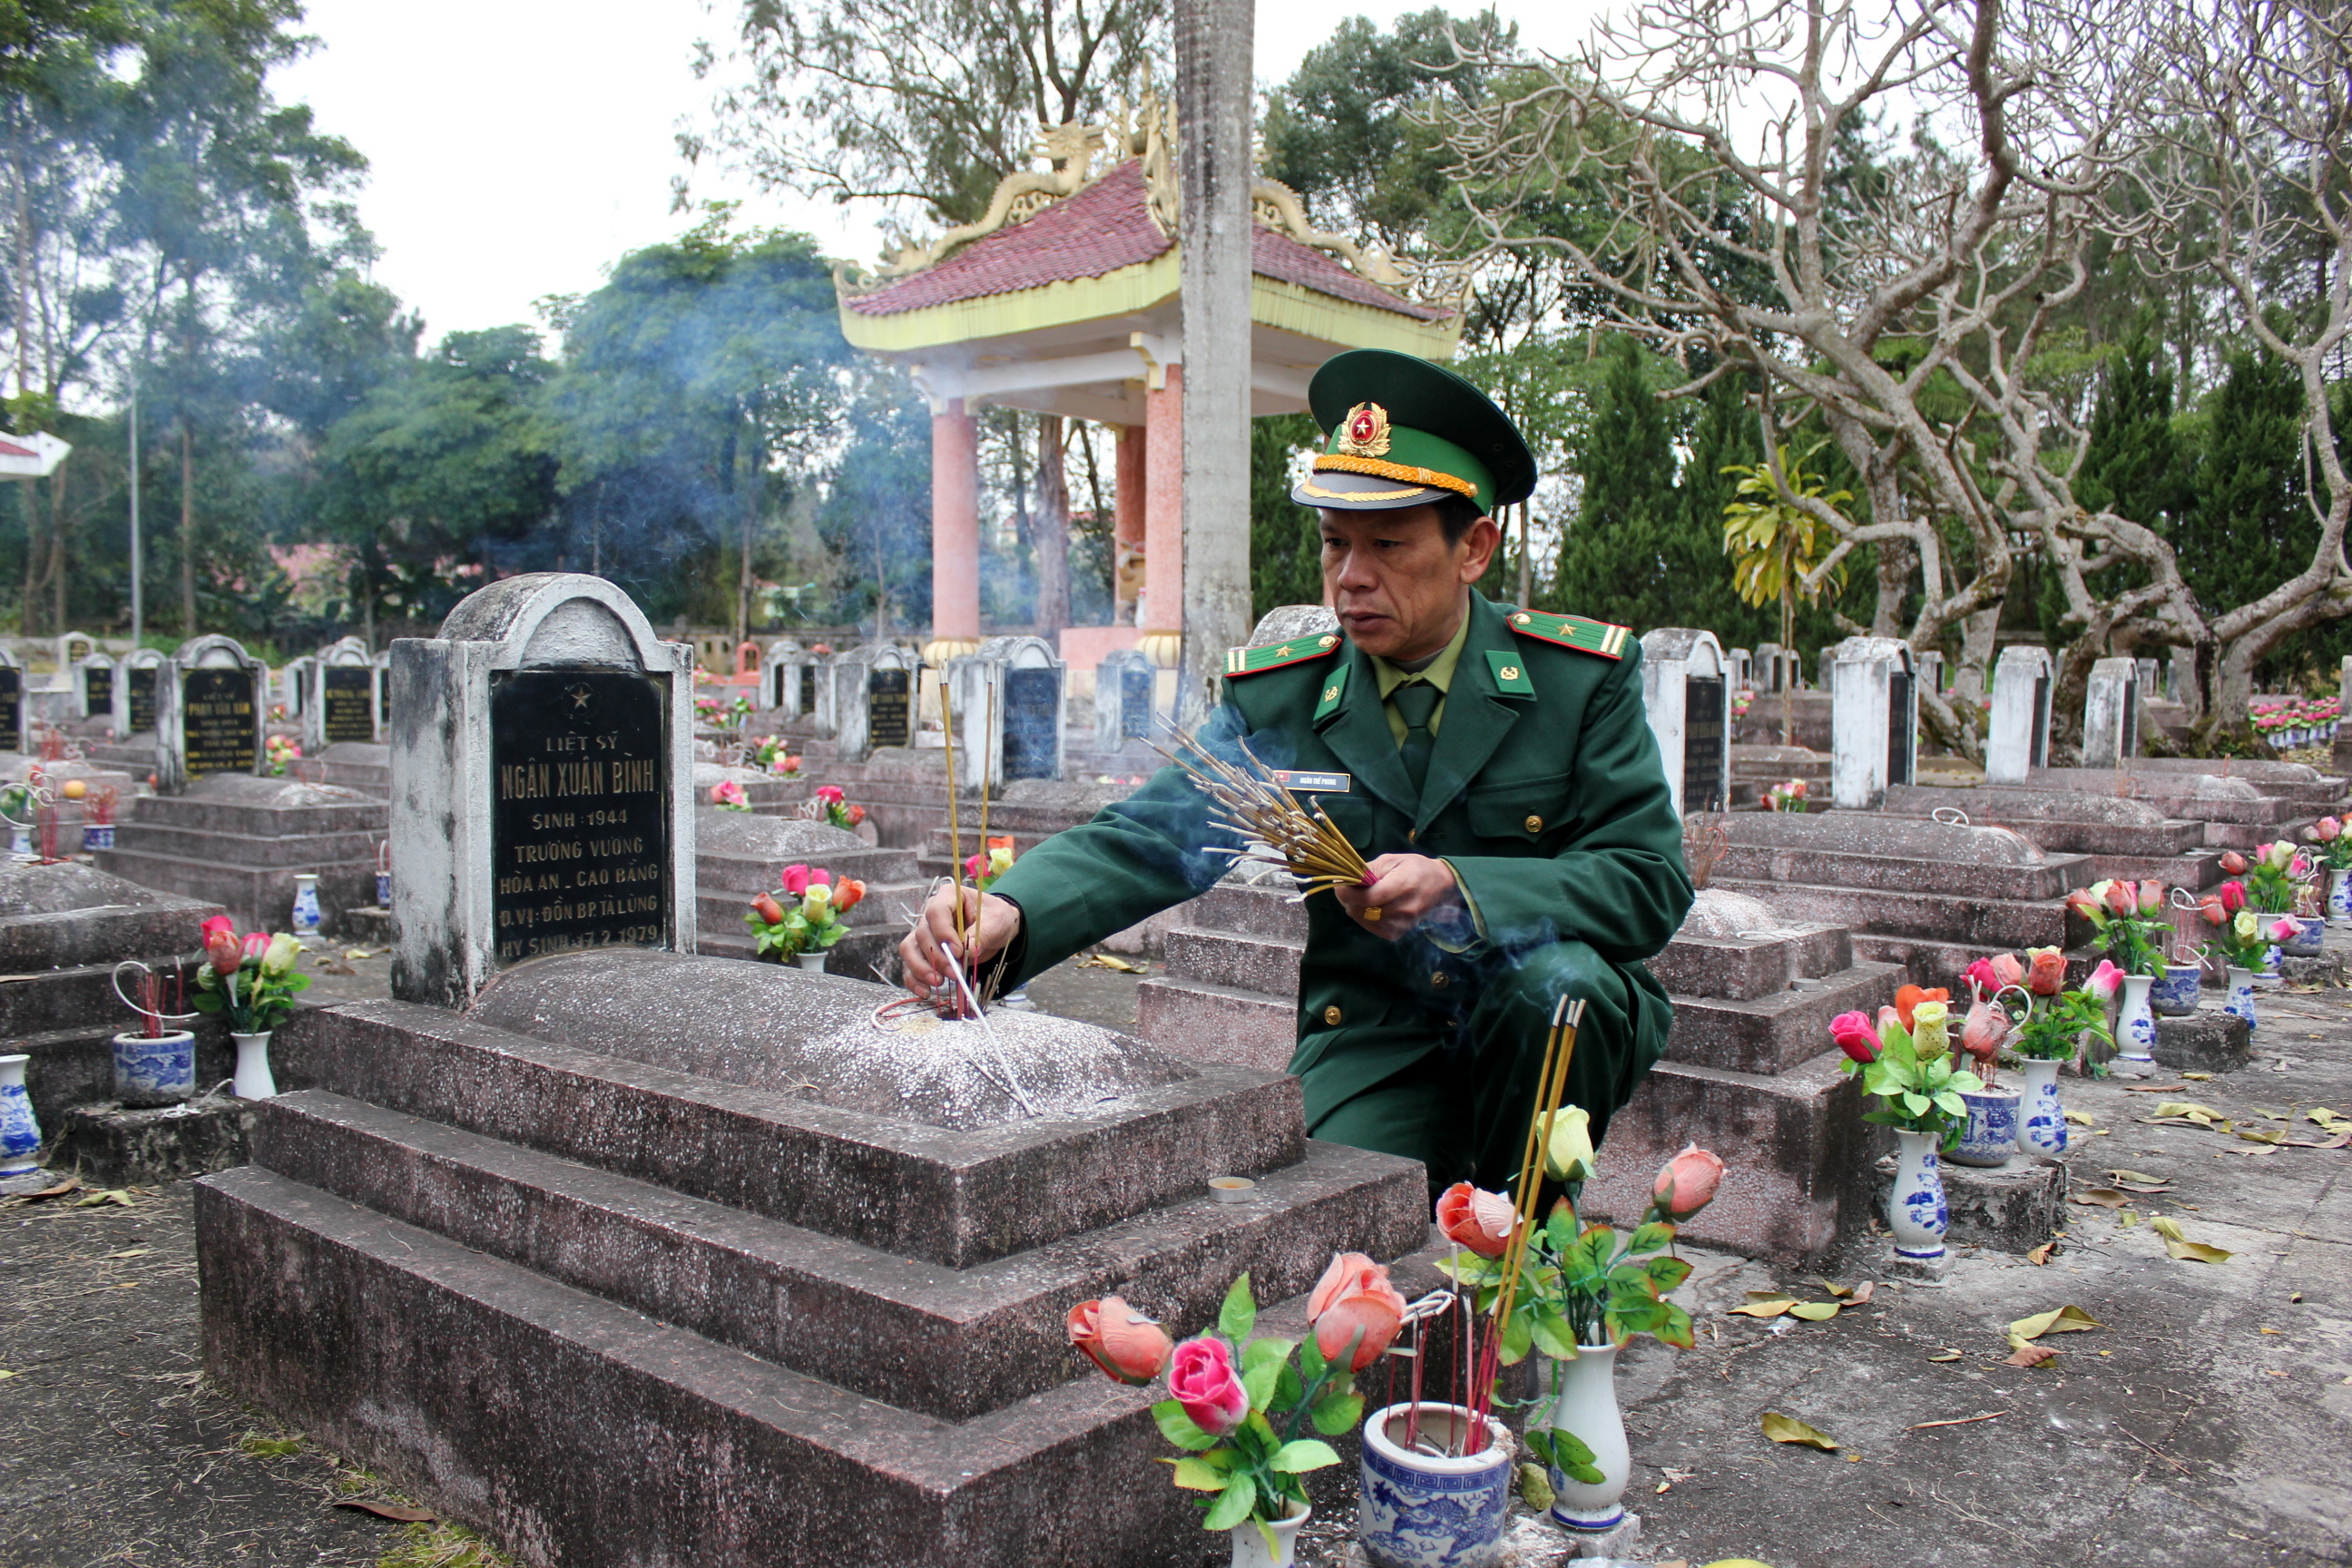 Thiếu tá Ngân Thế Phong thắp hương cho bố là liệt sĩ Ngân Xuân Bình, đang nằm tại Nghĩa trang liệt sĩ tỉnh Cao Bằng, sáng 17.2.2016 - Ảnh: Hà Quỳnh Trang